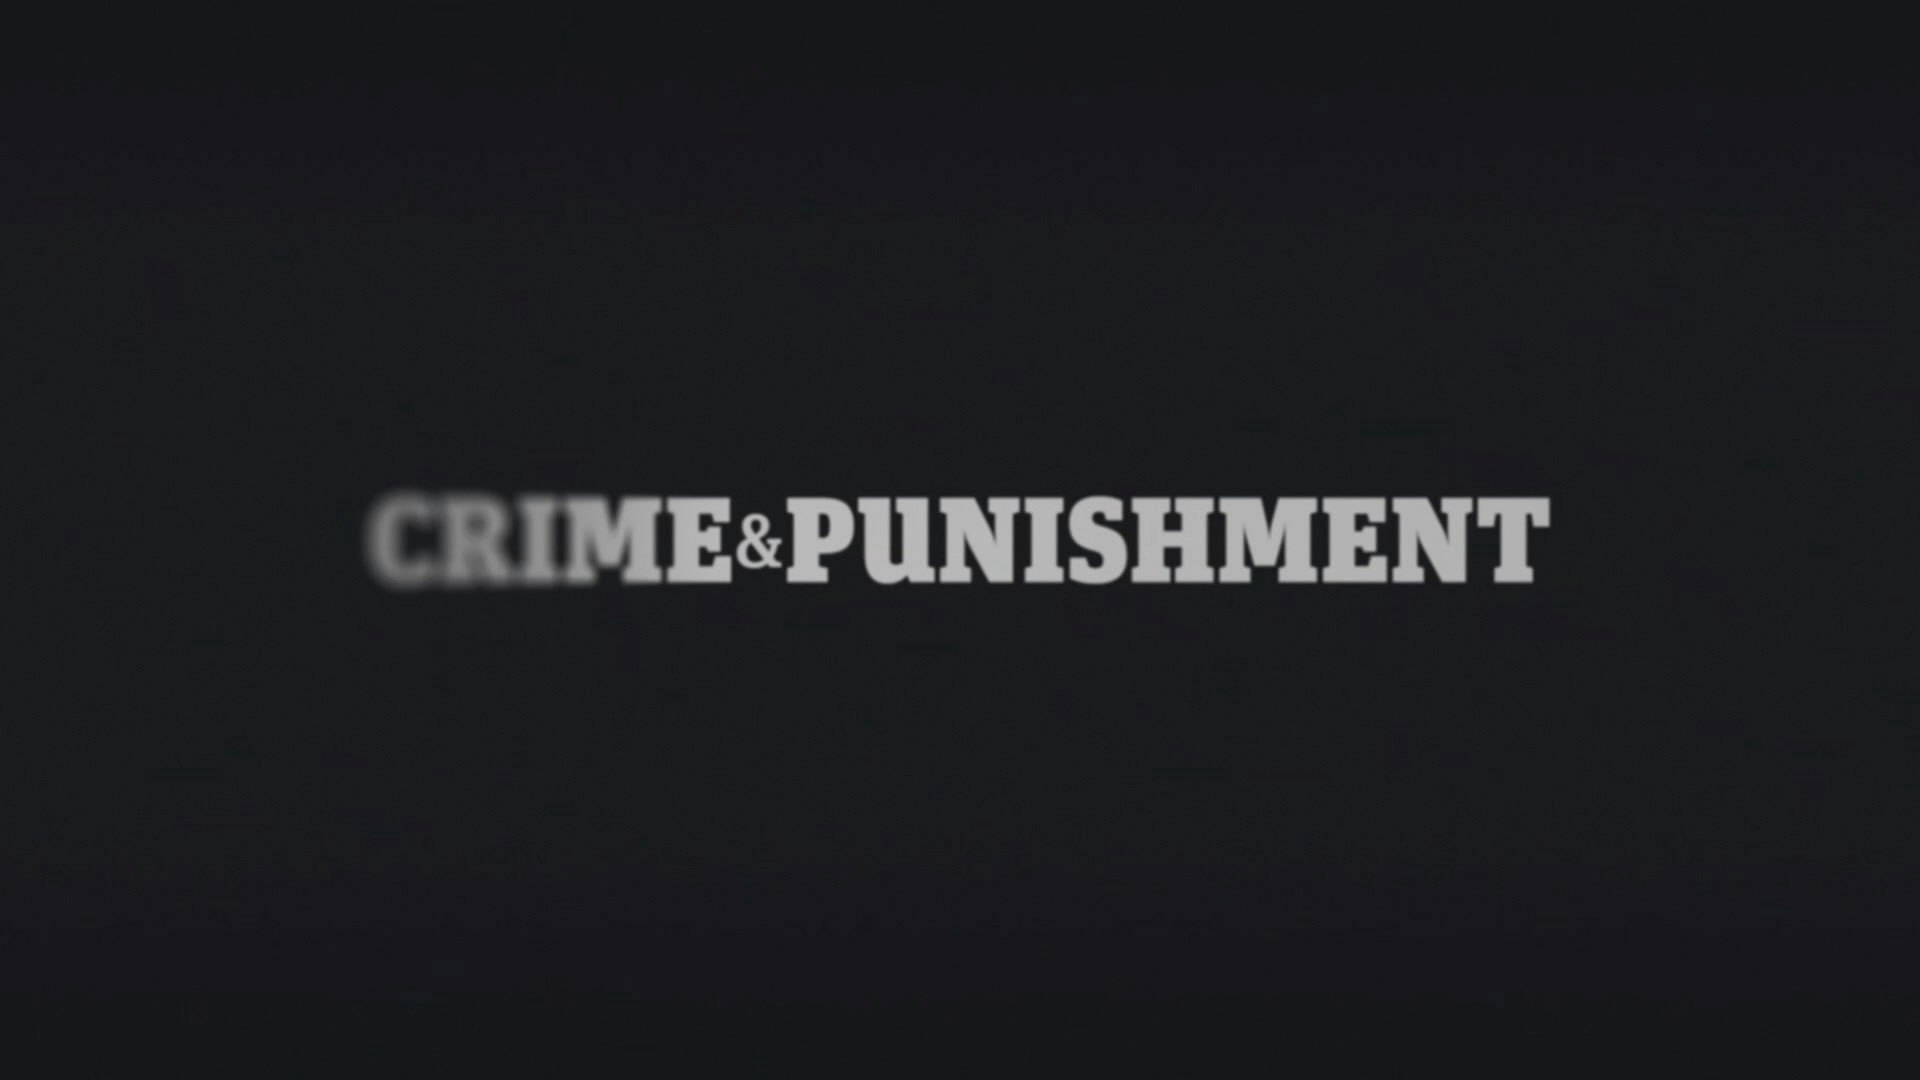 Jason Ford - Crime & Punishment Identity